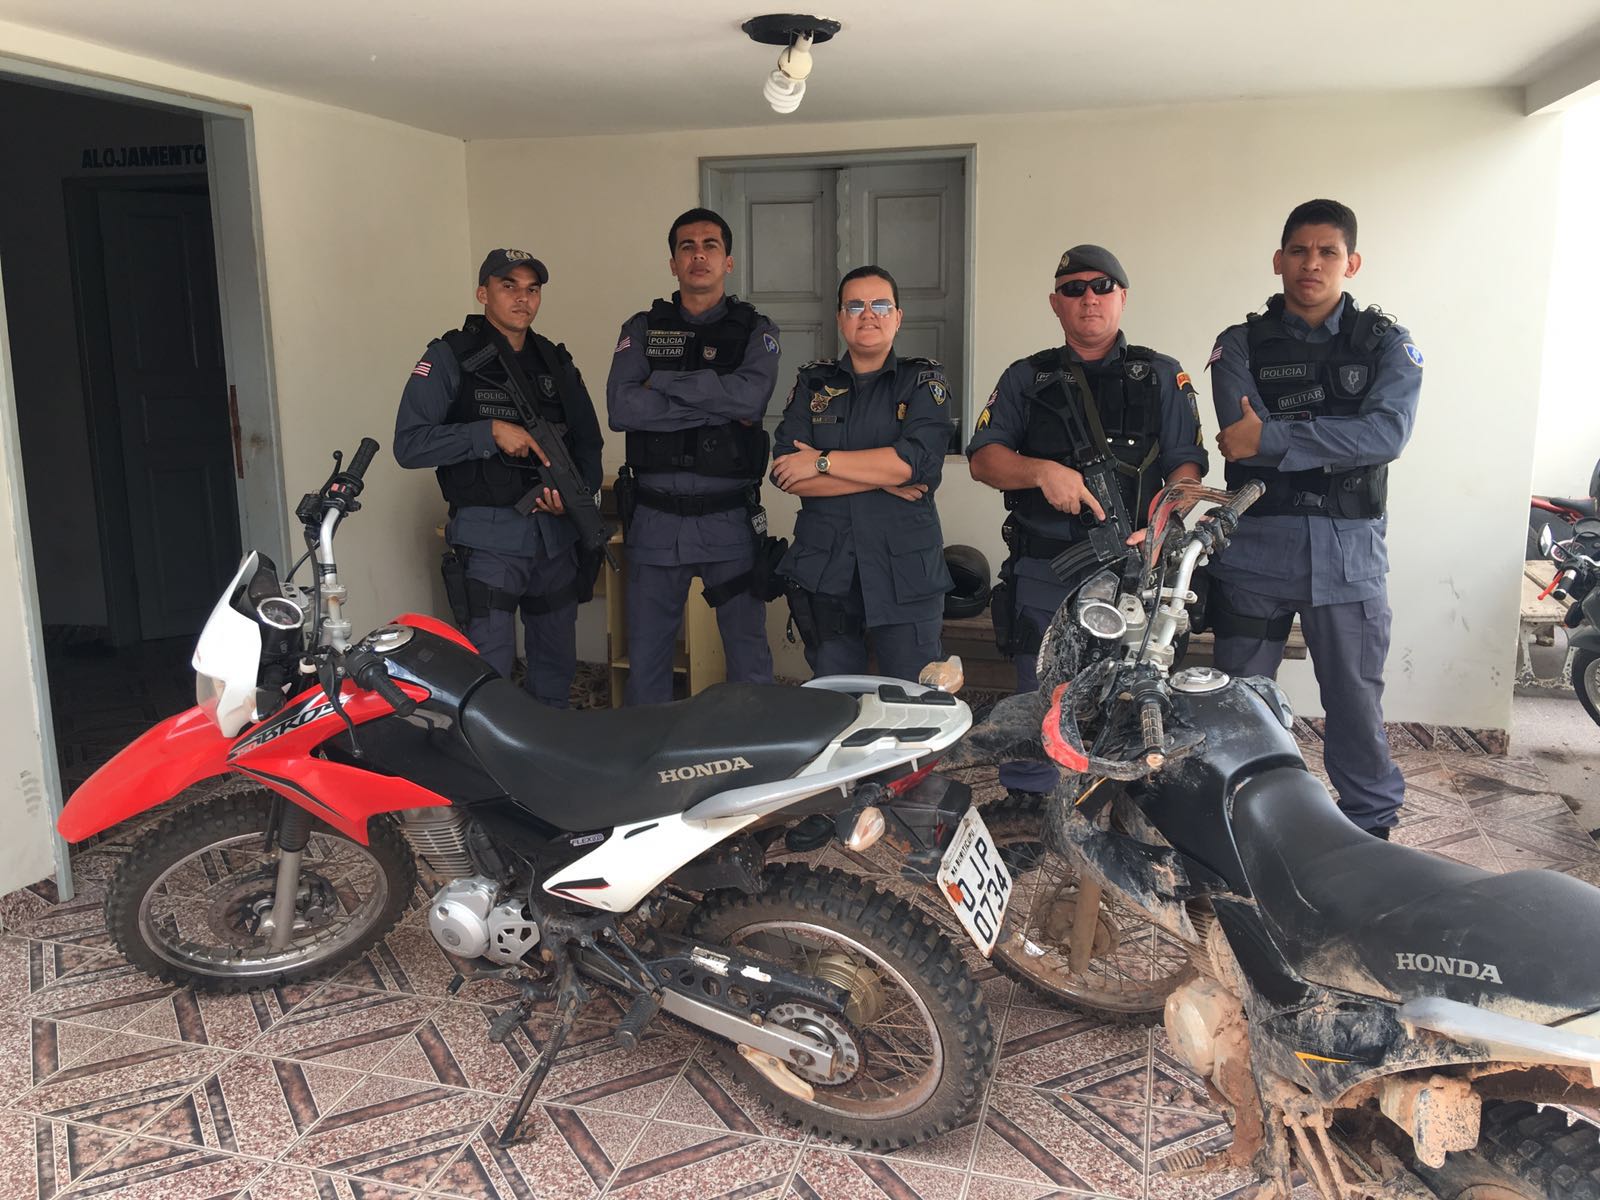 Polícia Militar de Bom Jardim recupera em uma semana quatro motos roubadas